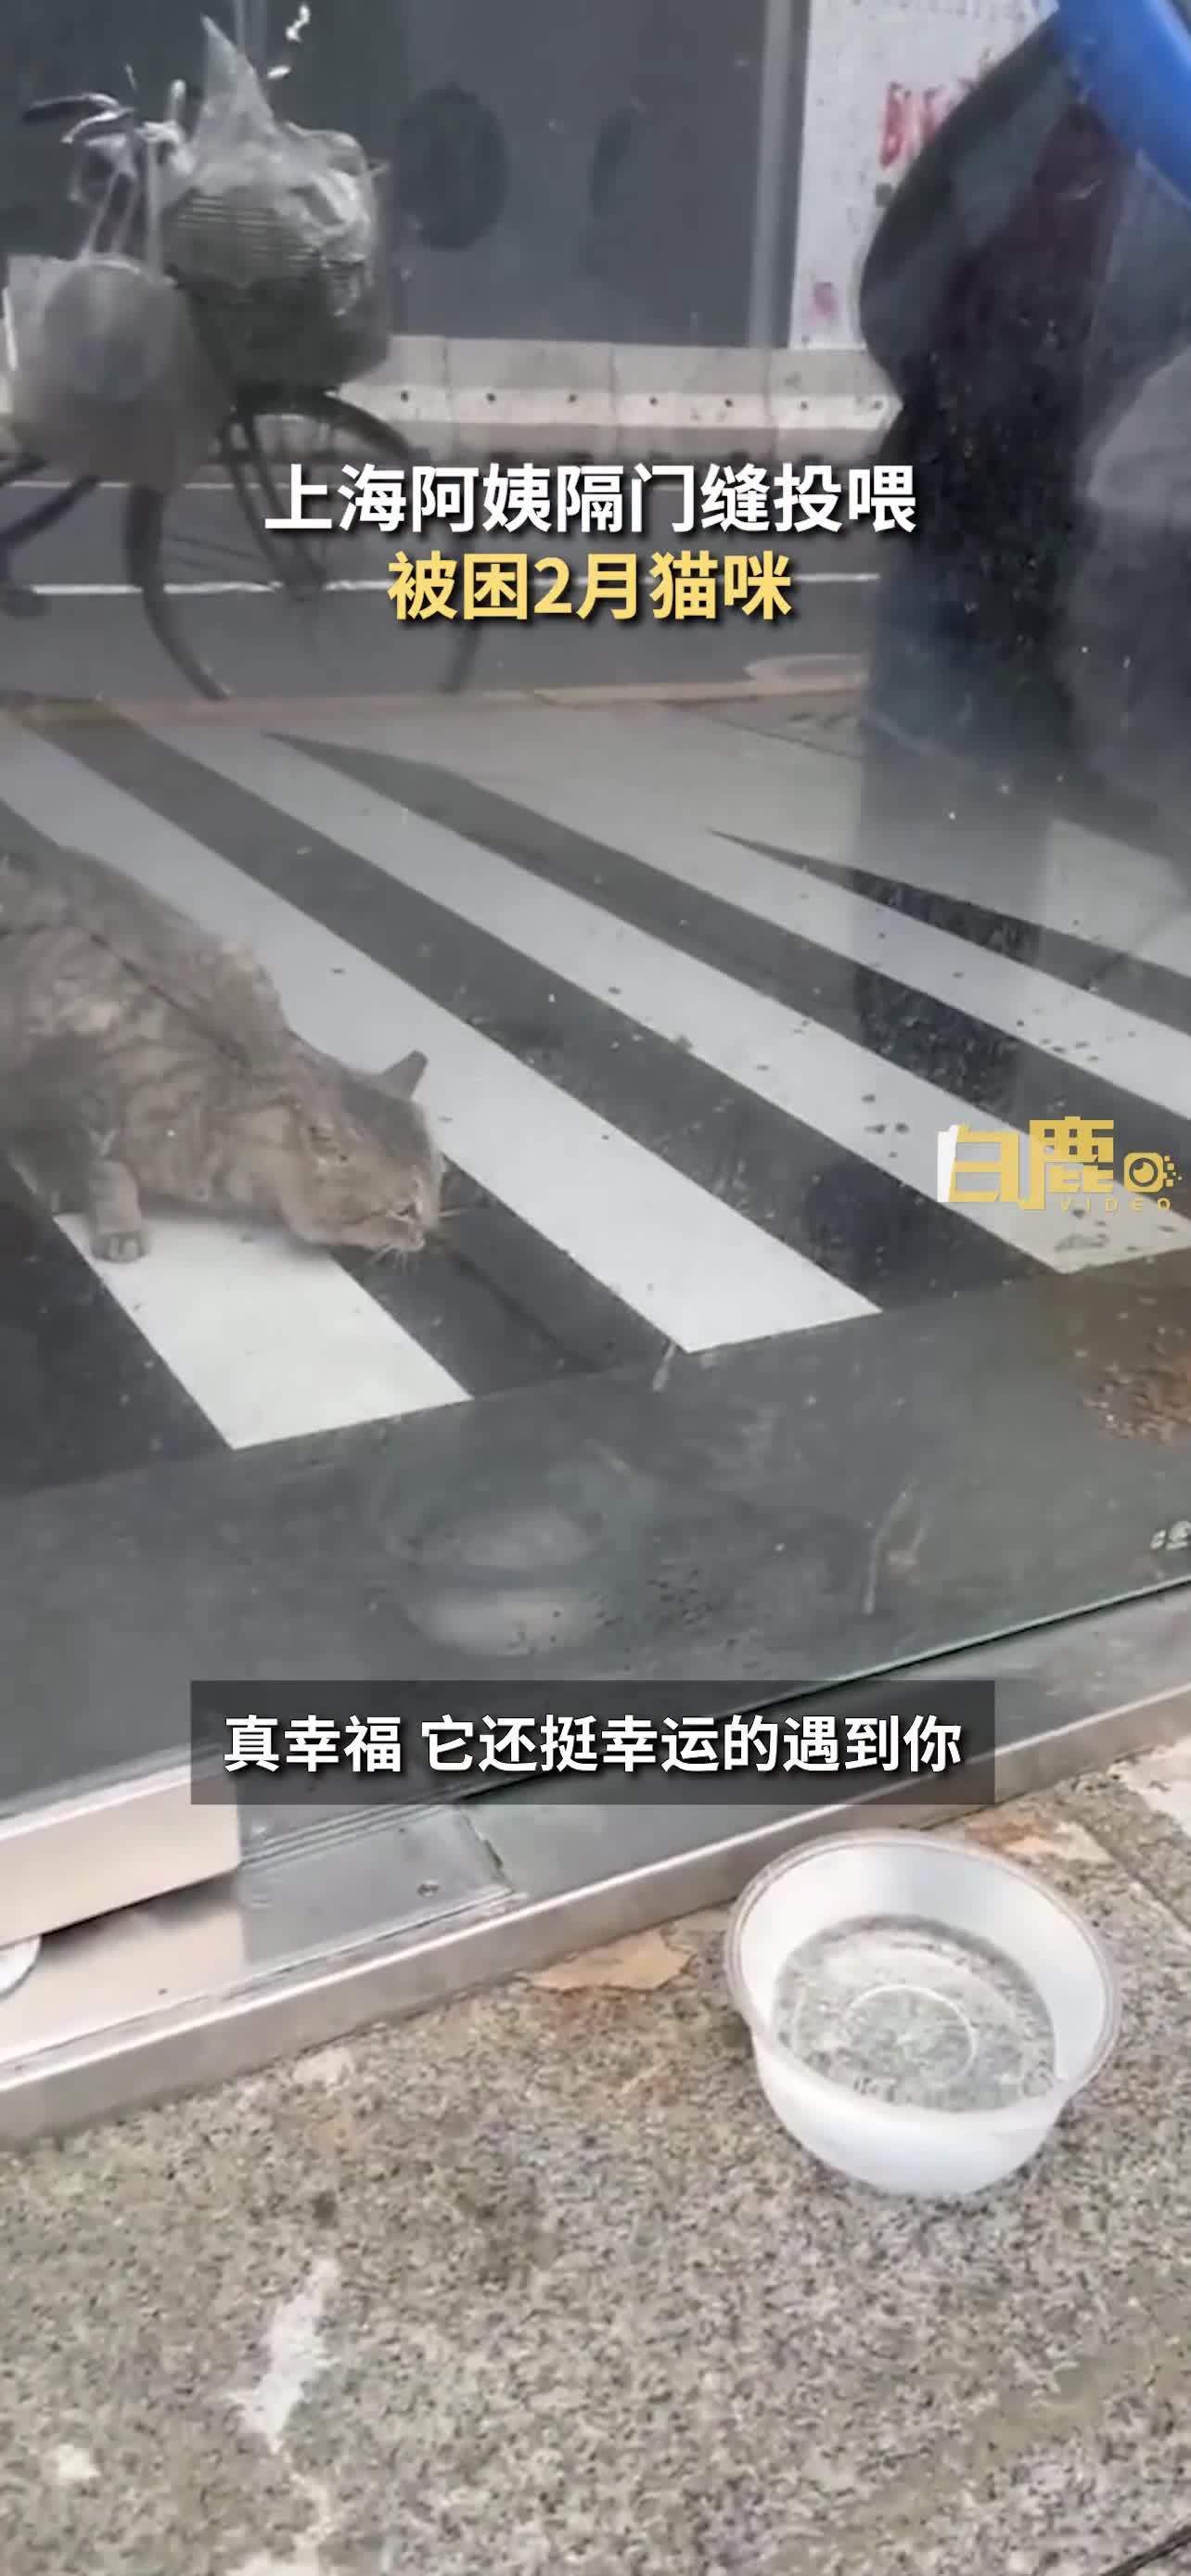 上海阿姨隔门缝投喂被困2月猫咪